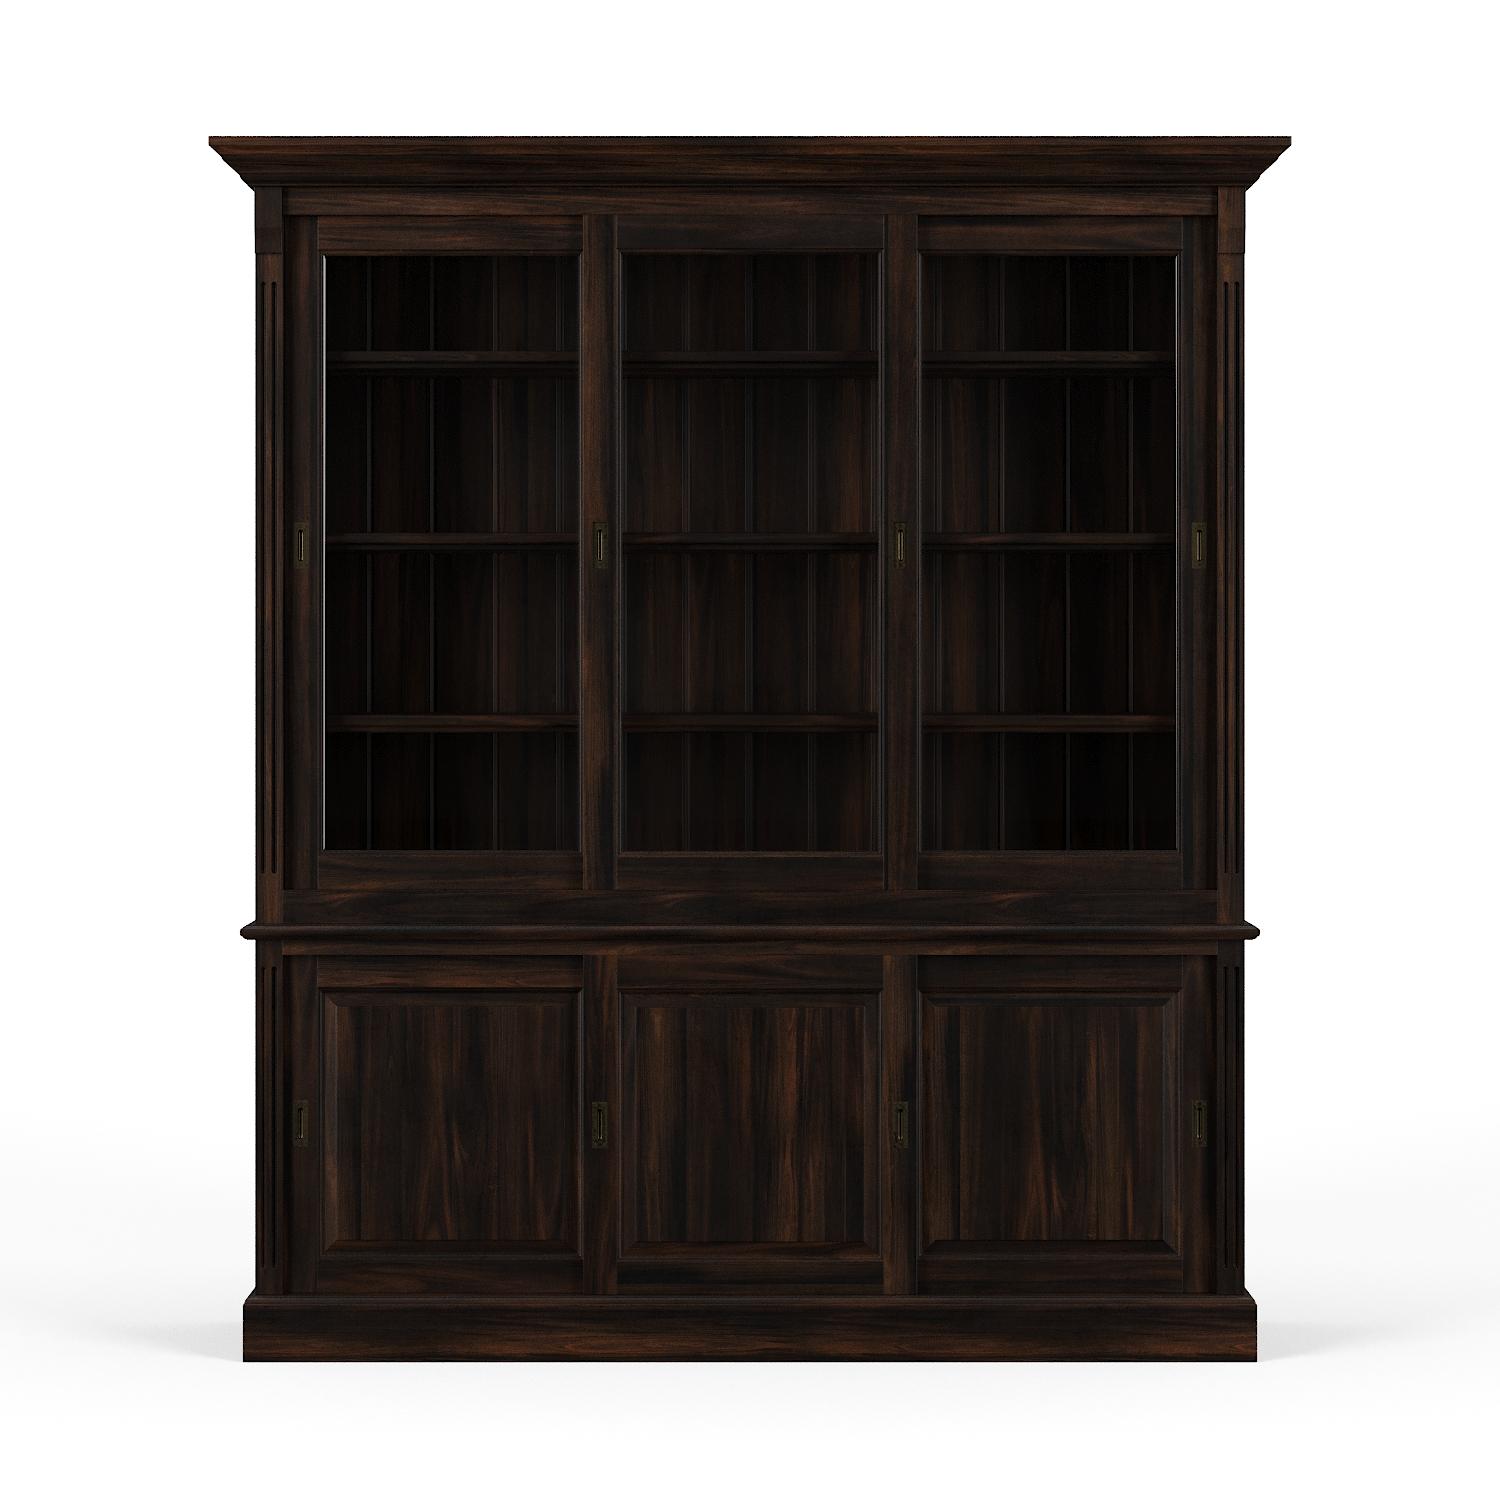 

    
Home Office BLACK VDK Hudson 88"Bookcase w/Sliding Doors Bramble 25975 Sp Order
